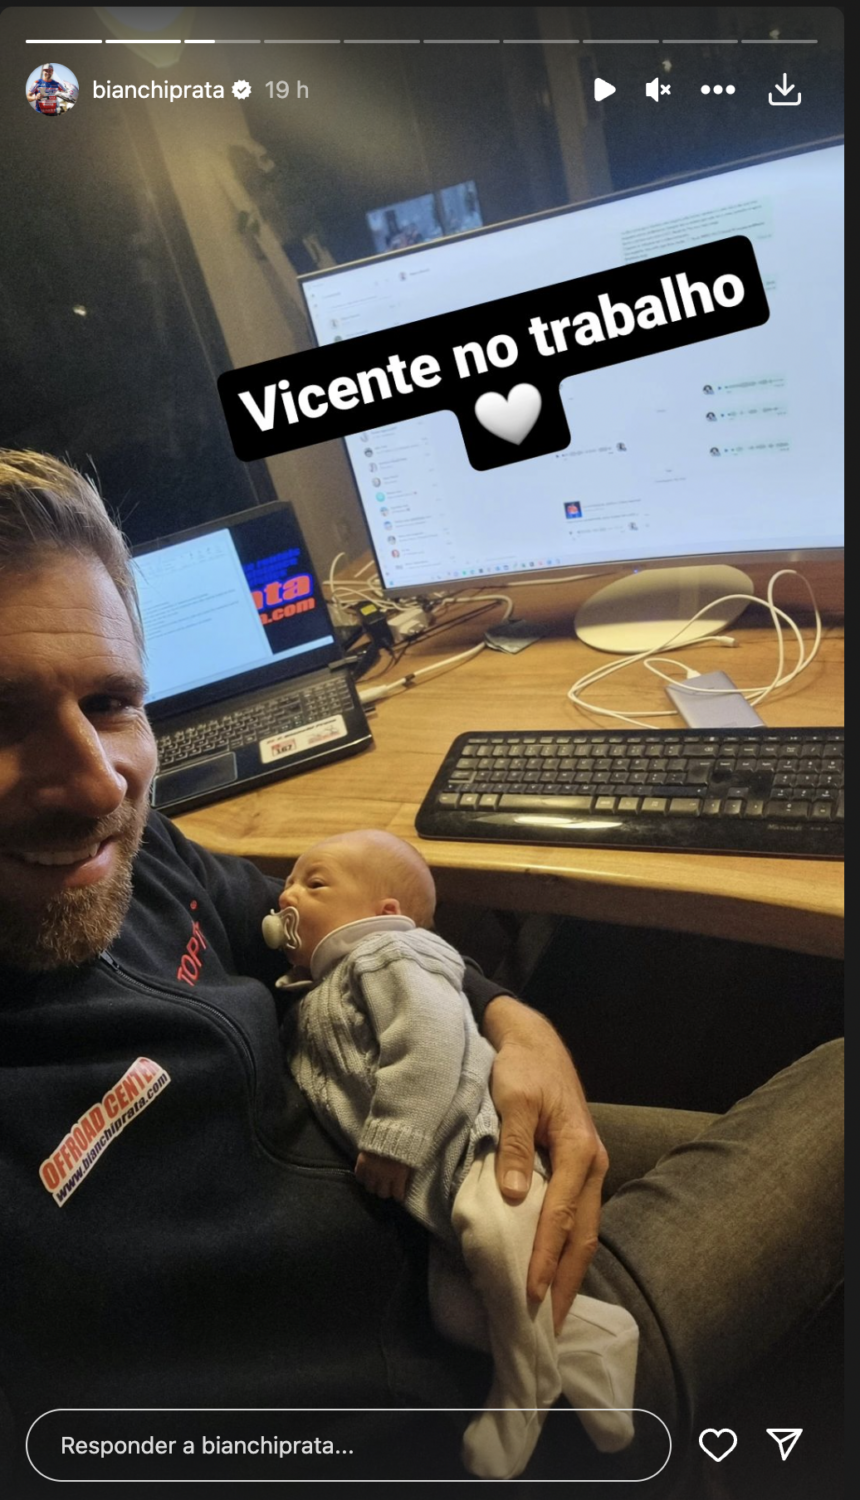 Que amor! Pedro Bianchi Prata revela (nova) foto com o filho: &#8220;Vicente no trabalho&#8230;&#8221;